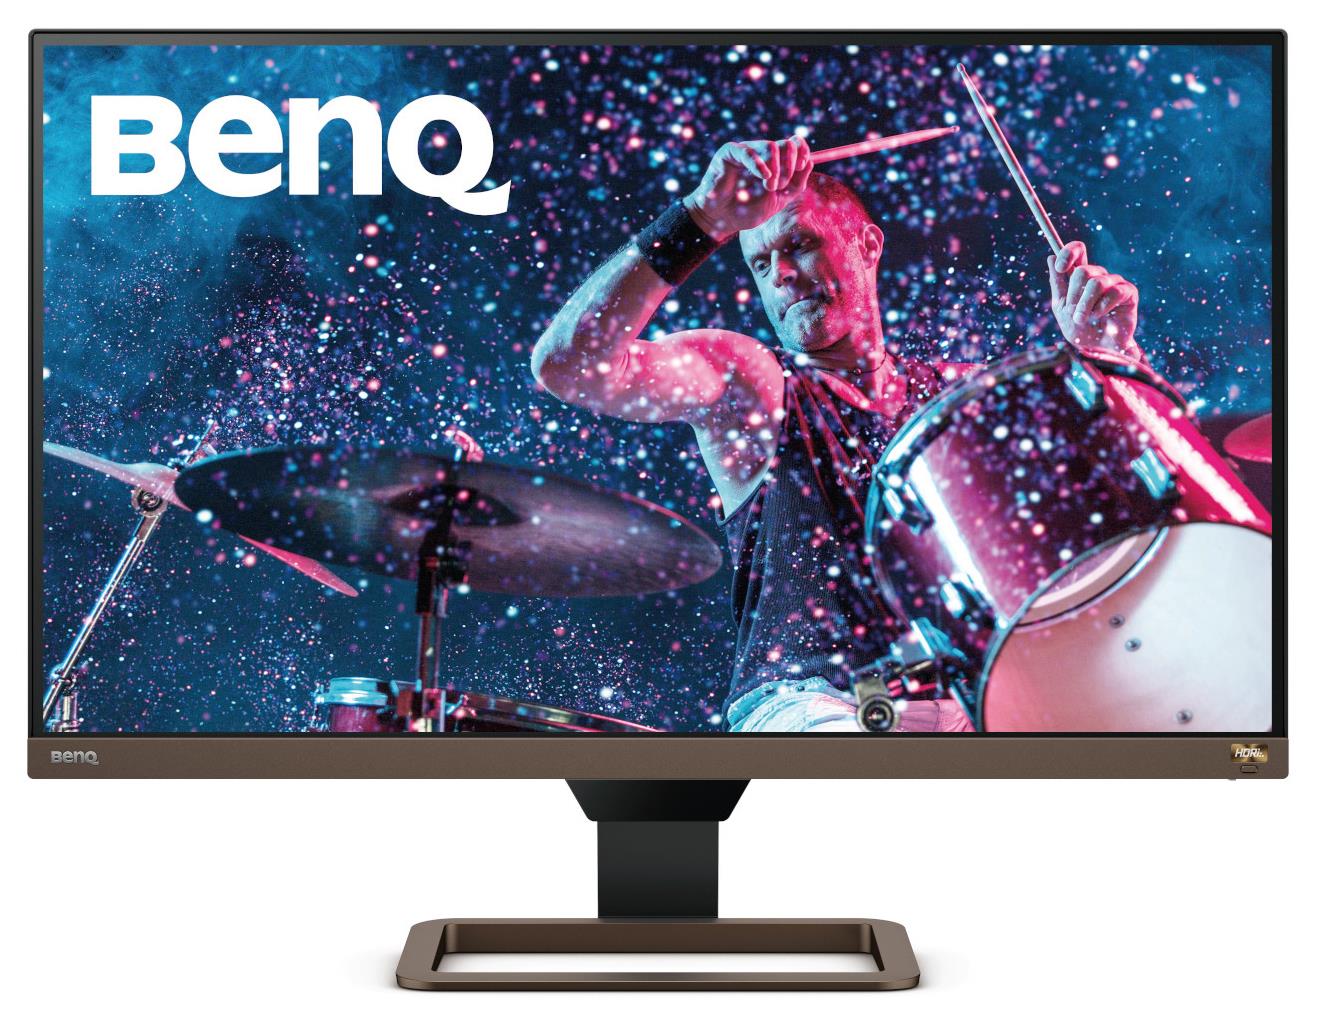 BENQ Monitor 27 LED